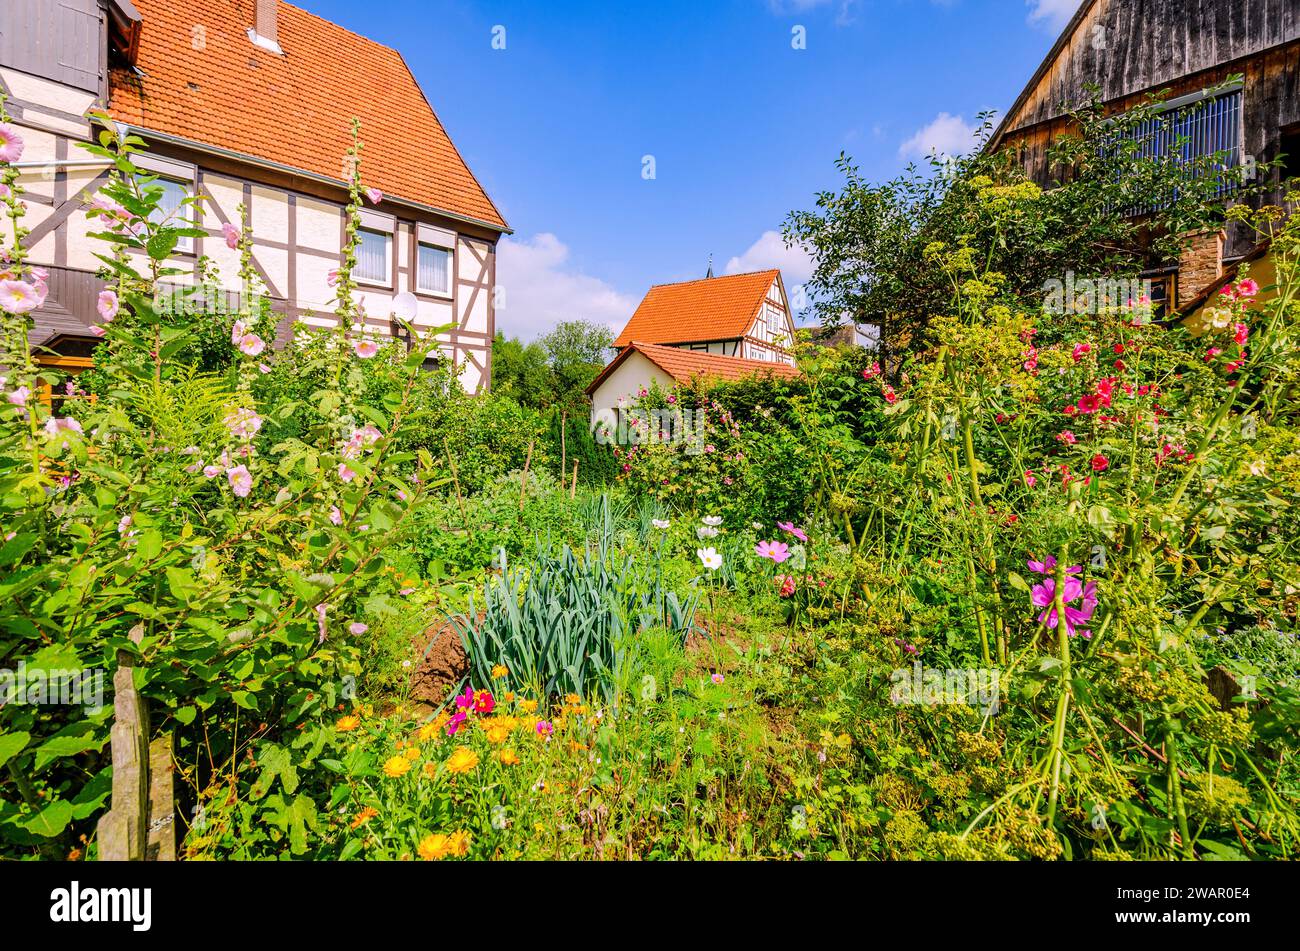 Giardino di cottage di fronte a case in legno in una zona rurale nell'Assia settentrionale, Germania Foto Stock